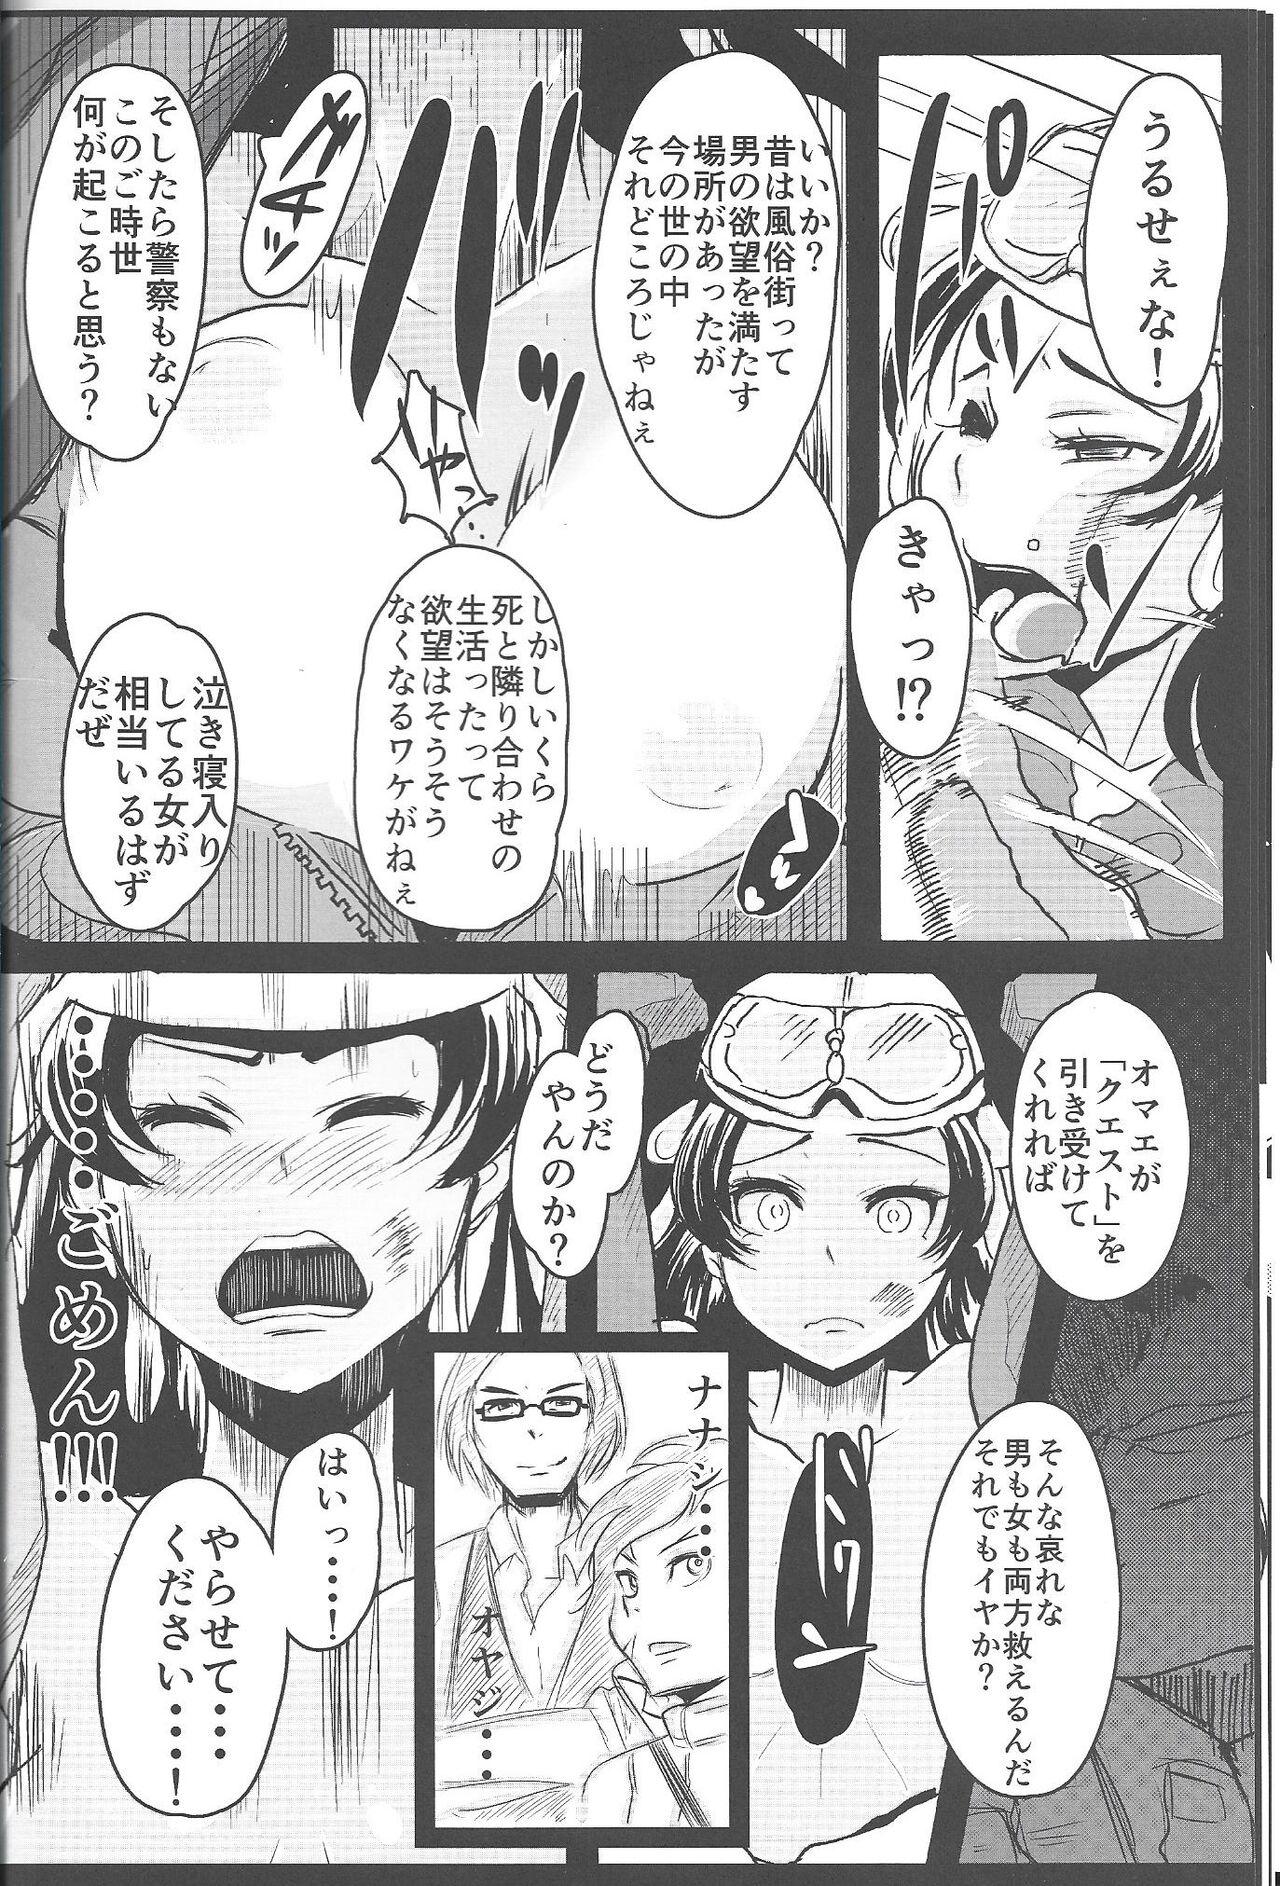 Twistys Ichininmae no Megami Zenpen - The Full Grown Goddess part 1 - Shin megami tensei Amigos - Page 9